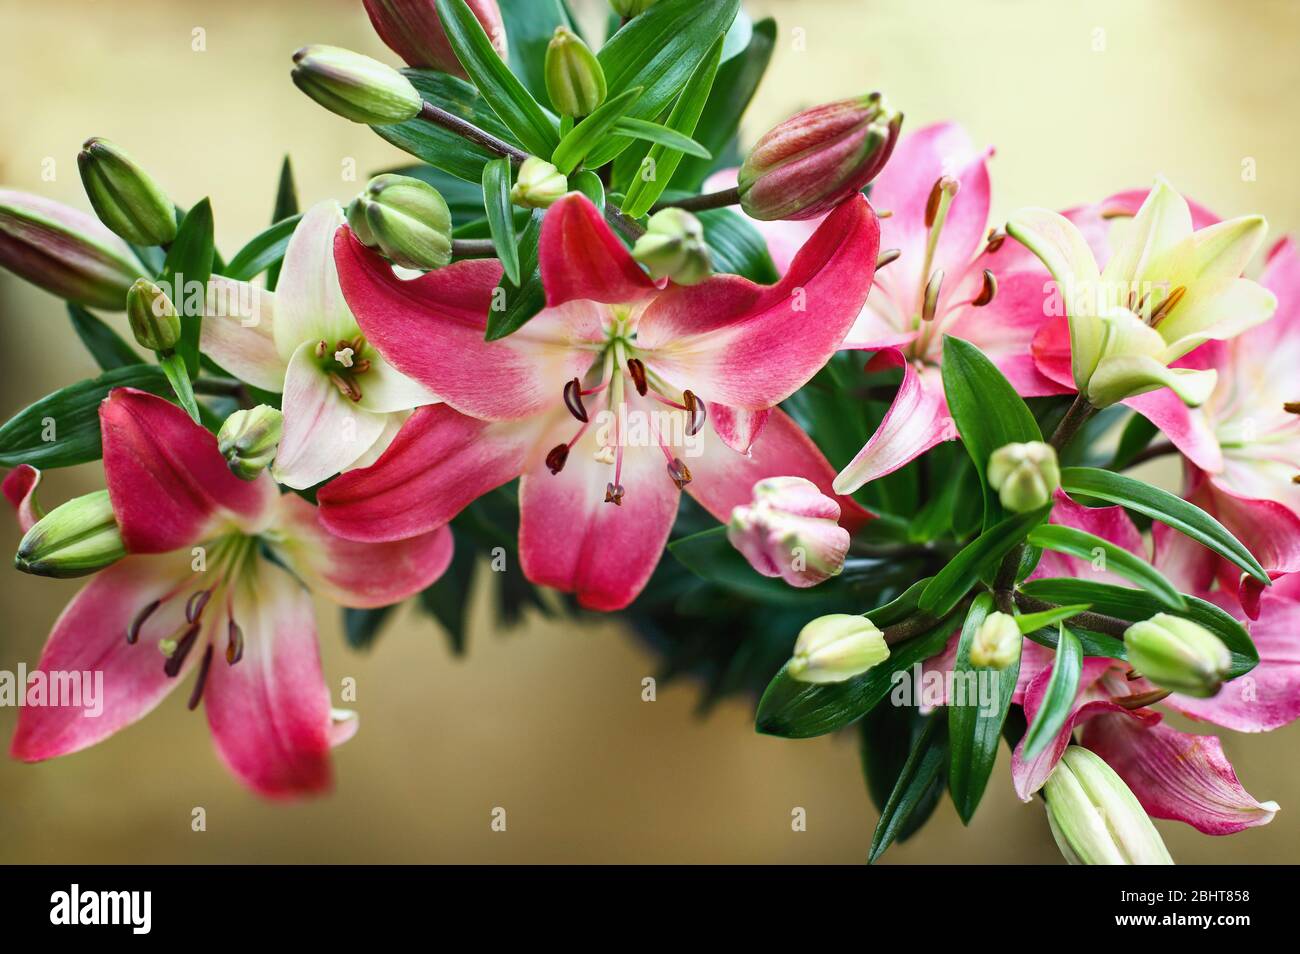 Vue en hauteur des magnifiques Lys asiatiques (Lily orientale), hybrides de Llium, roses et blanches, sur fond de cuivre. Photo prise depuis la vue de dessus. Banque D'Images